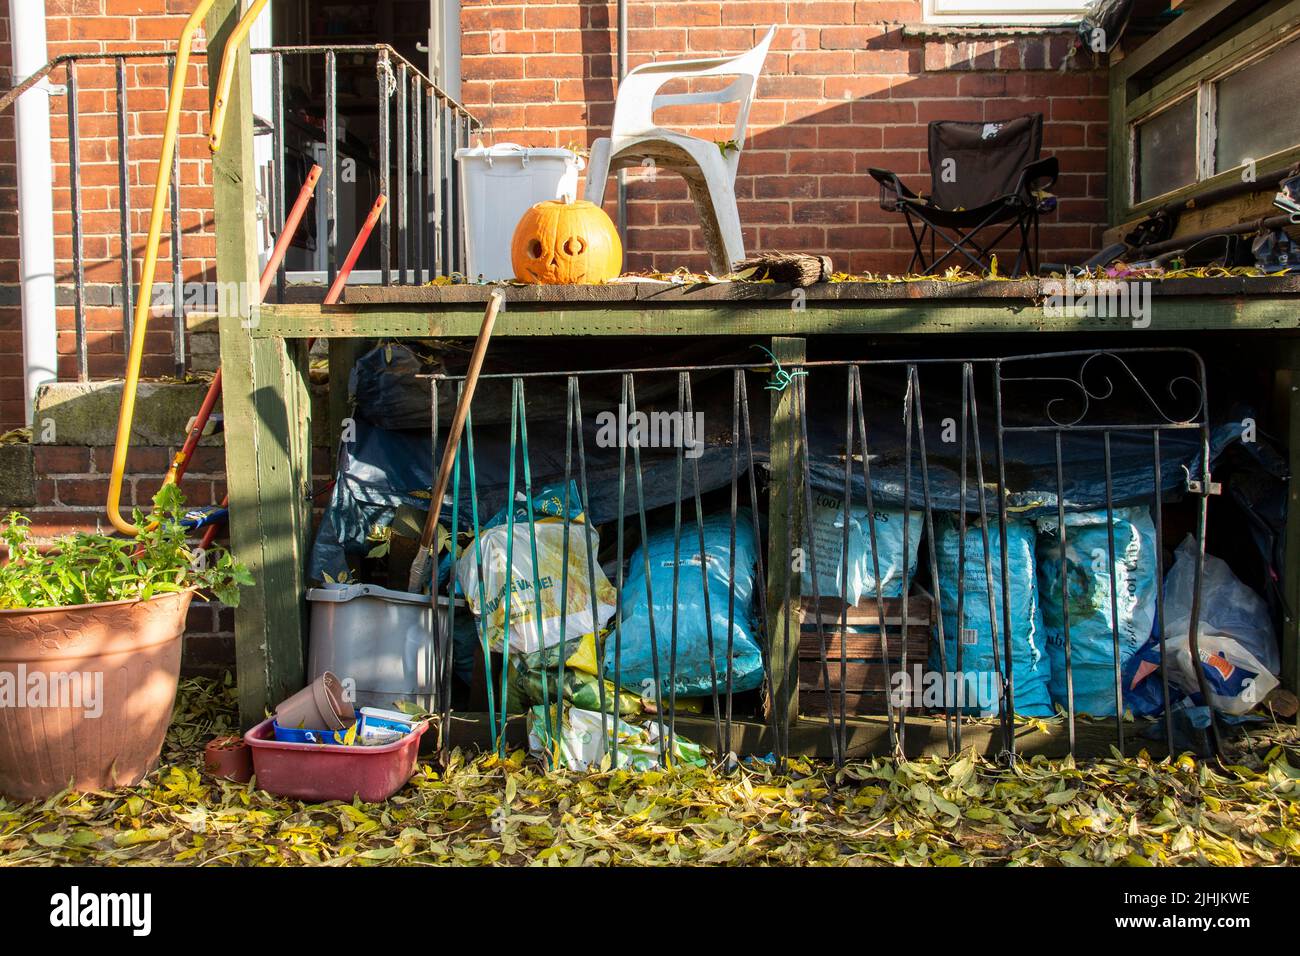 Sheffield, Großbritannien - 31 Oct 2019: Ein langsam verfaulender Kürbiskerl oder eine Laterne, die auf dem Deck zwischen Chaos und herbstlichen Herbstblättern in meinem Garten abgelegt wurde Stockfoto